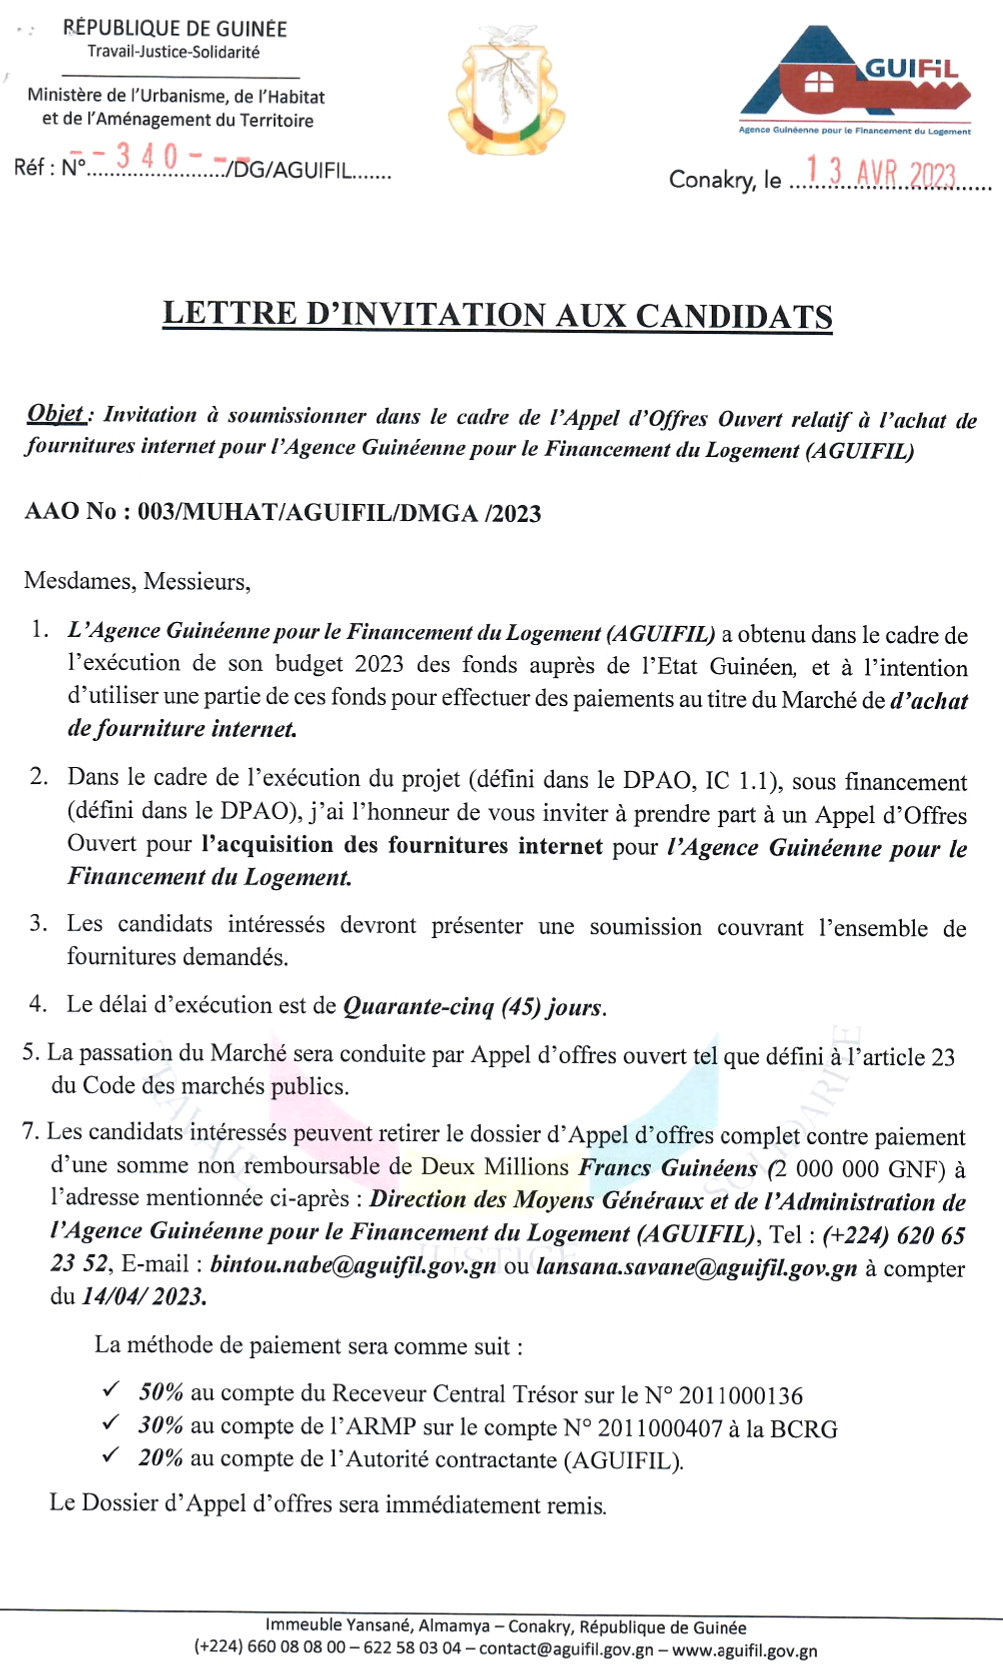  Invitation à soumissionner dans le cadre de l’Appel d’Offres Ouvert relatif à l’achat de fournitures internet pour l’Agence Guinéenne pour le Financement du Logement (AGUIFIL)  | page 1